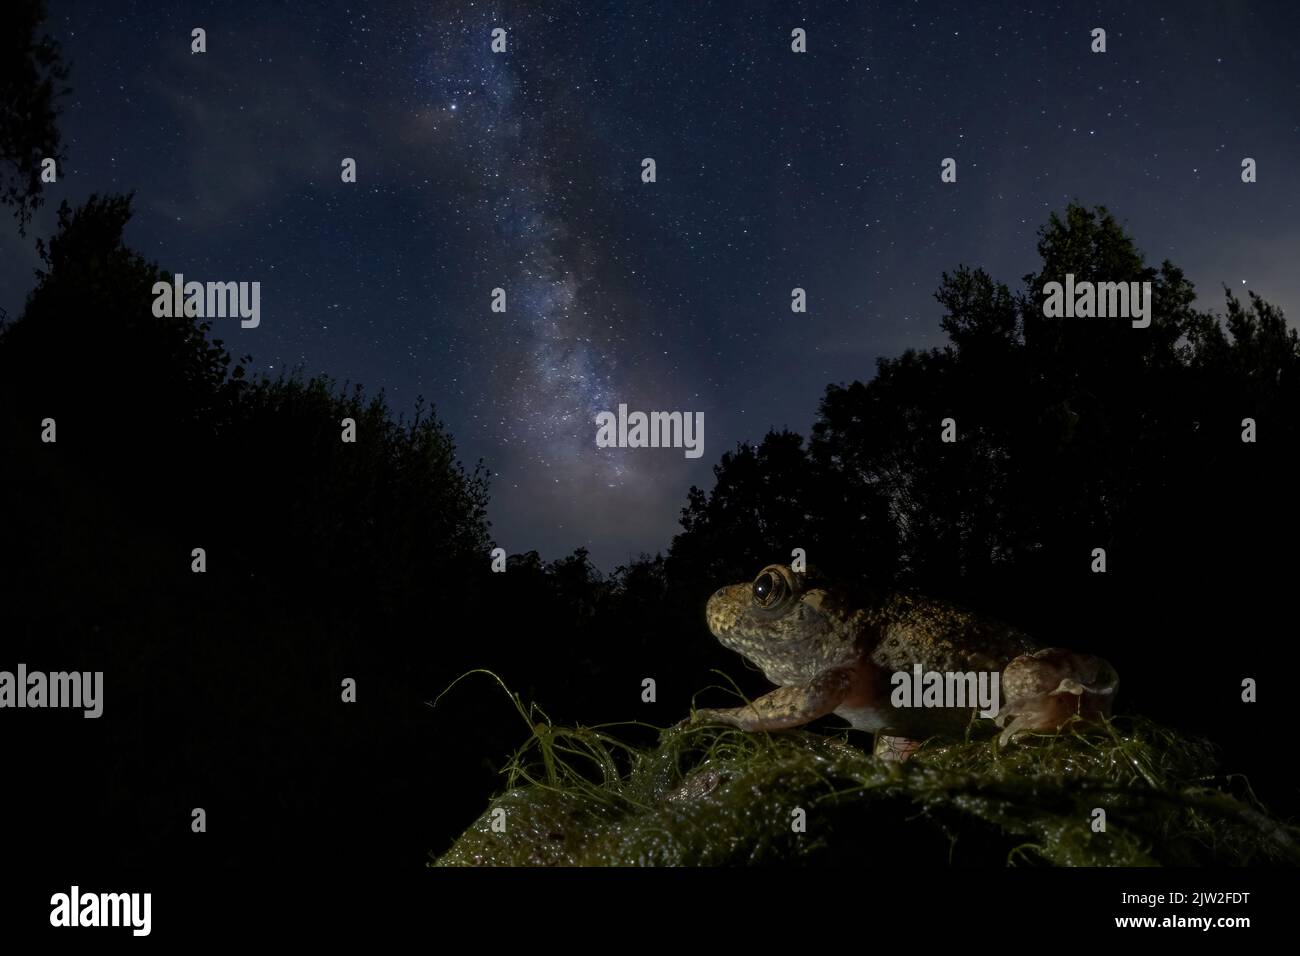 Vista laterale del rospo di natterjack che si siede su un masso roccioso sotto il cielo stellato panoramico della notte con la Via Lattea luminosa Foto Stock